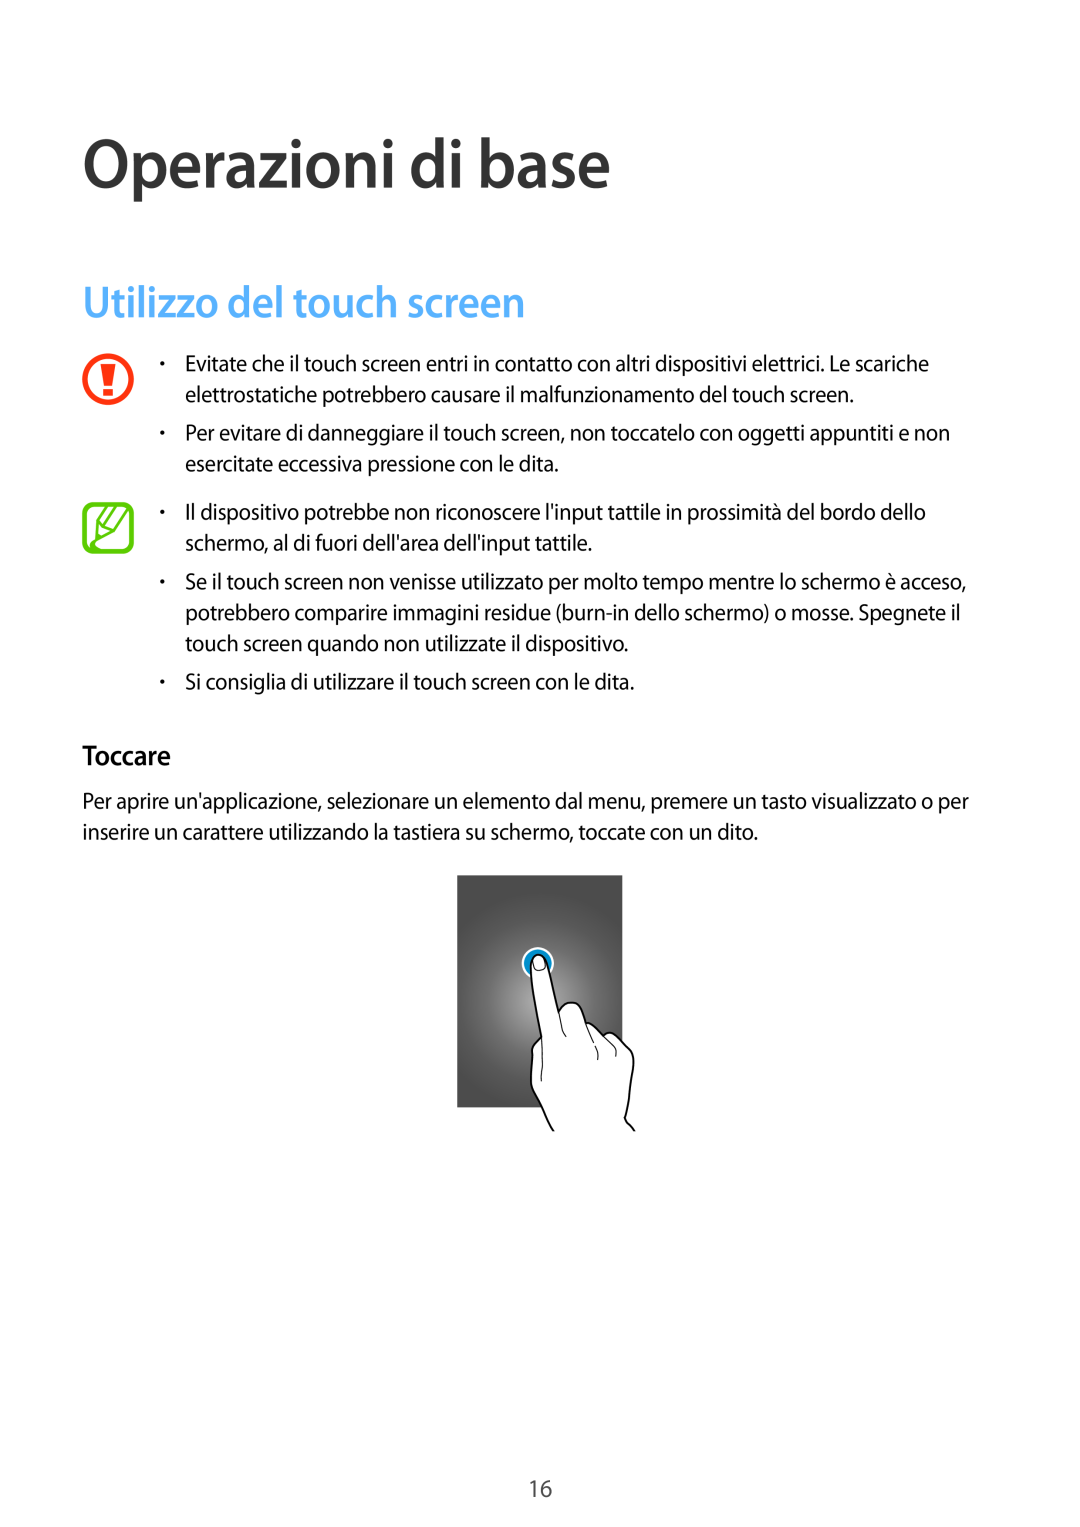 Samsung SM-T700NTSATUR, SM-T700NZWATUR, SM-T700NTSAXEO manual Operazioni di base, Utilizzo del touch screen, Toccare 